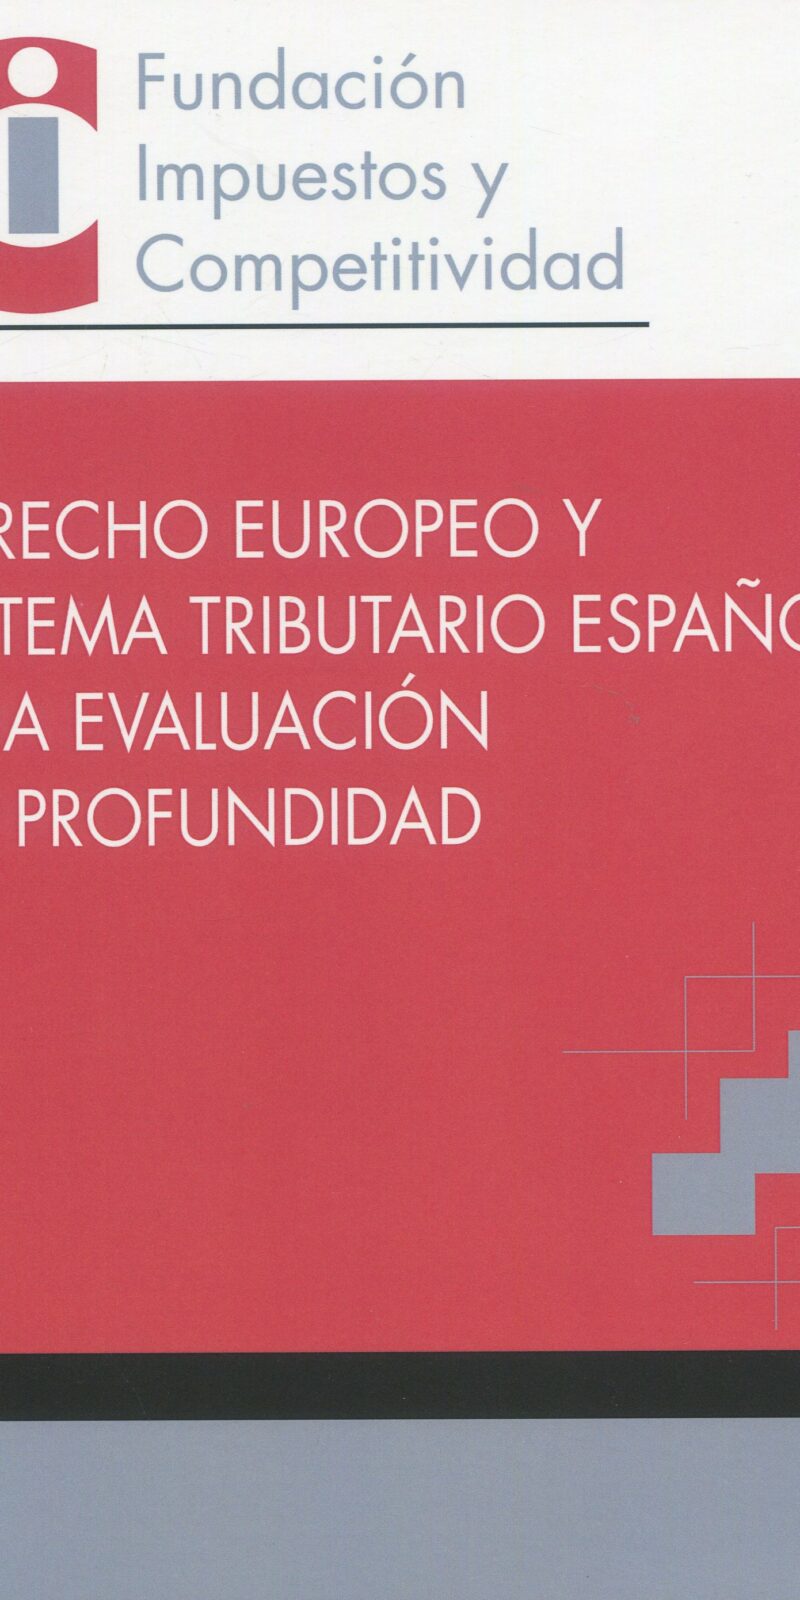 Derecho europeo y sistema tributario español 9788409540808